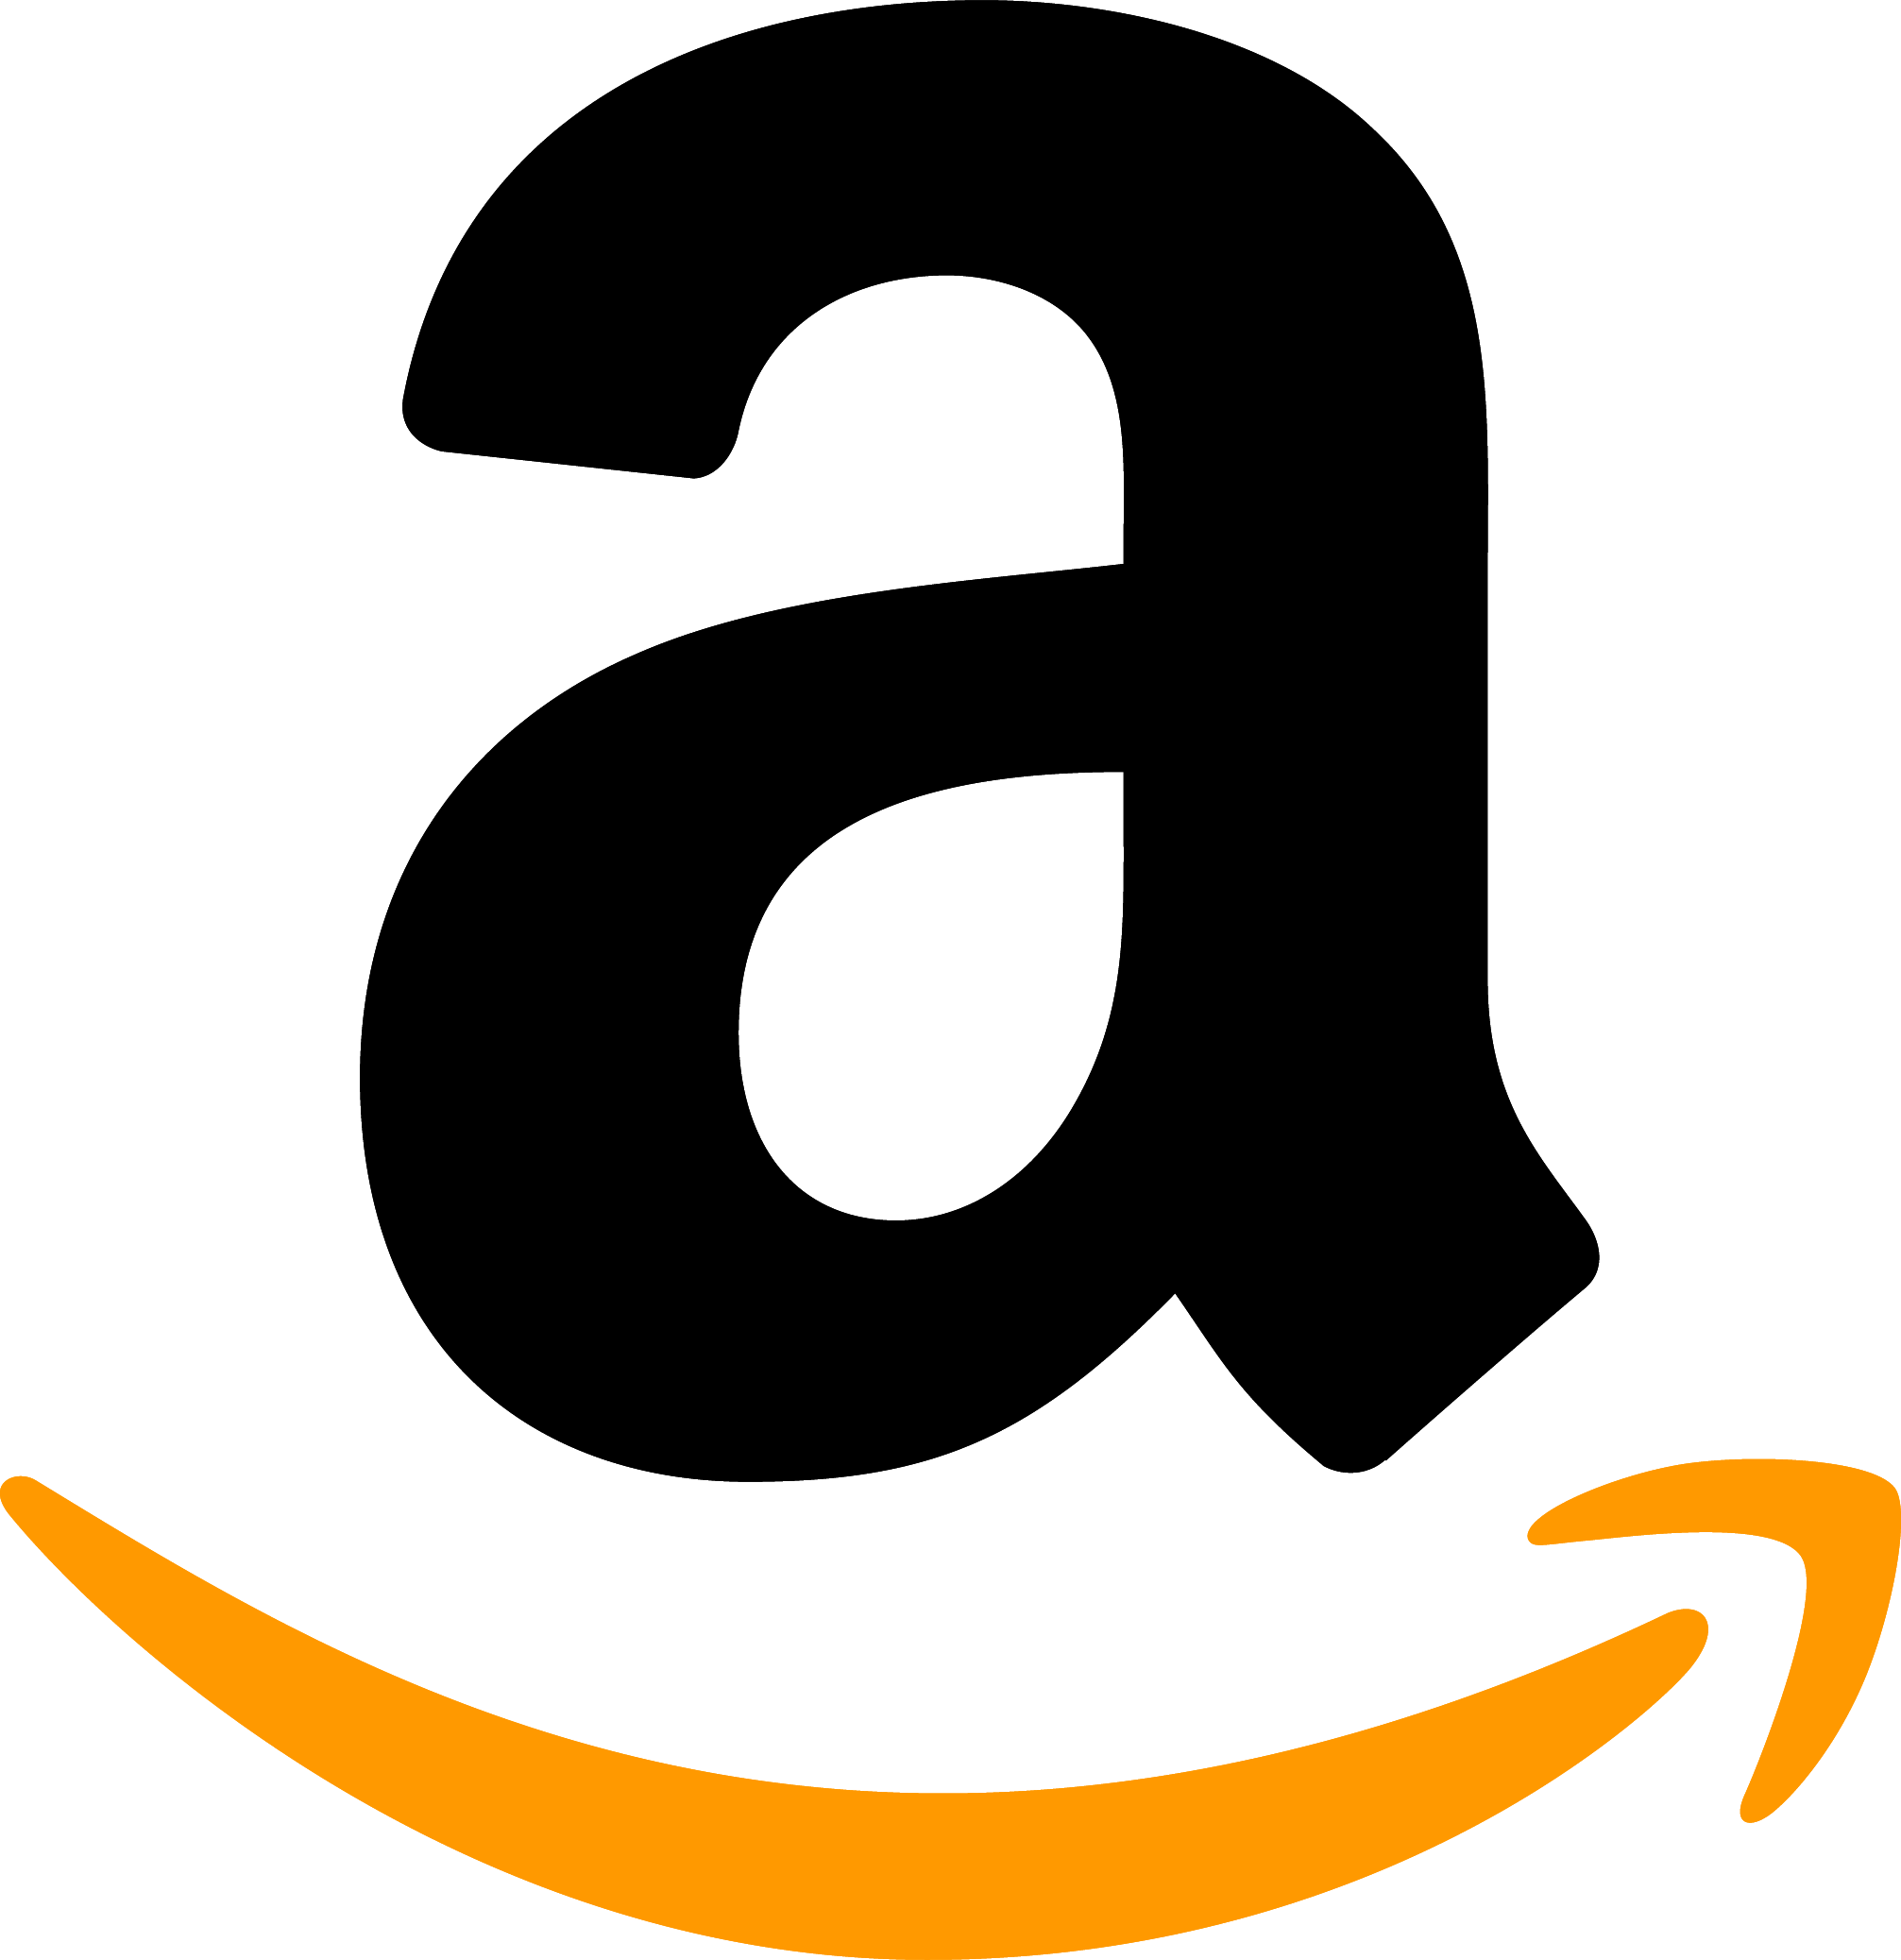 Amazon Logo Png Transparent Amazon Logo Latest Amazon Logo Images ...